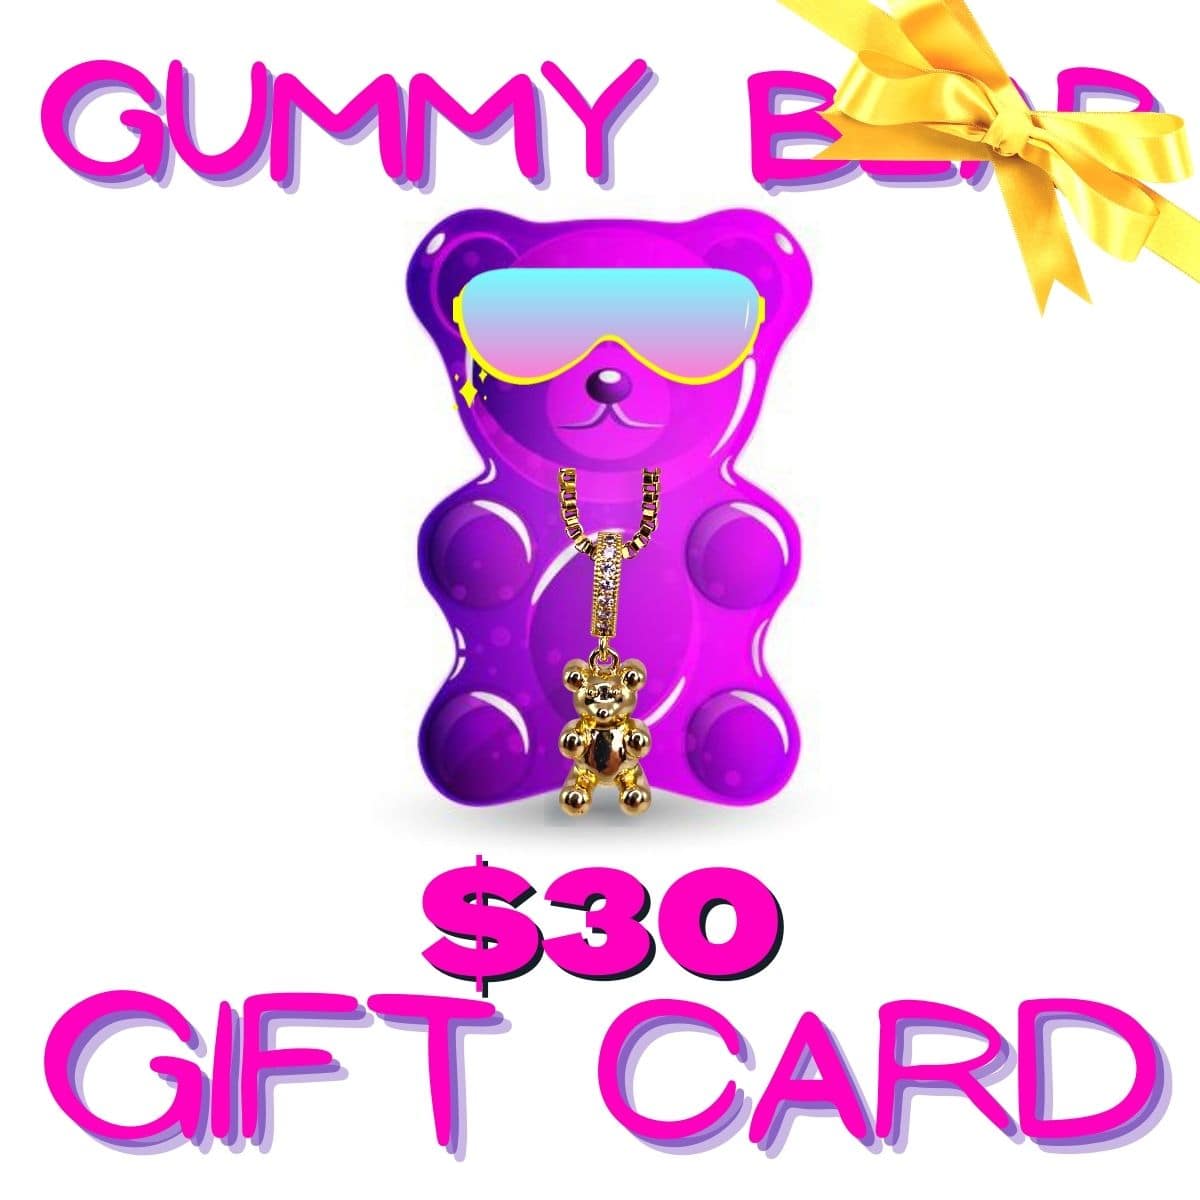 gummy bear bling $30 gift card - gummy bear bling